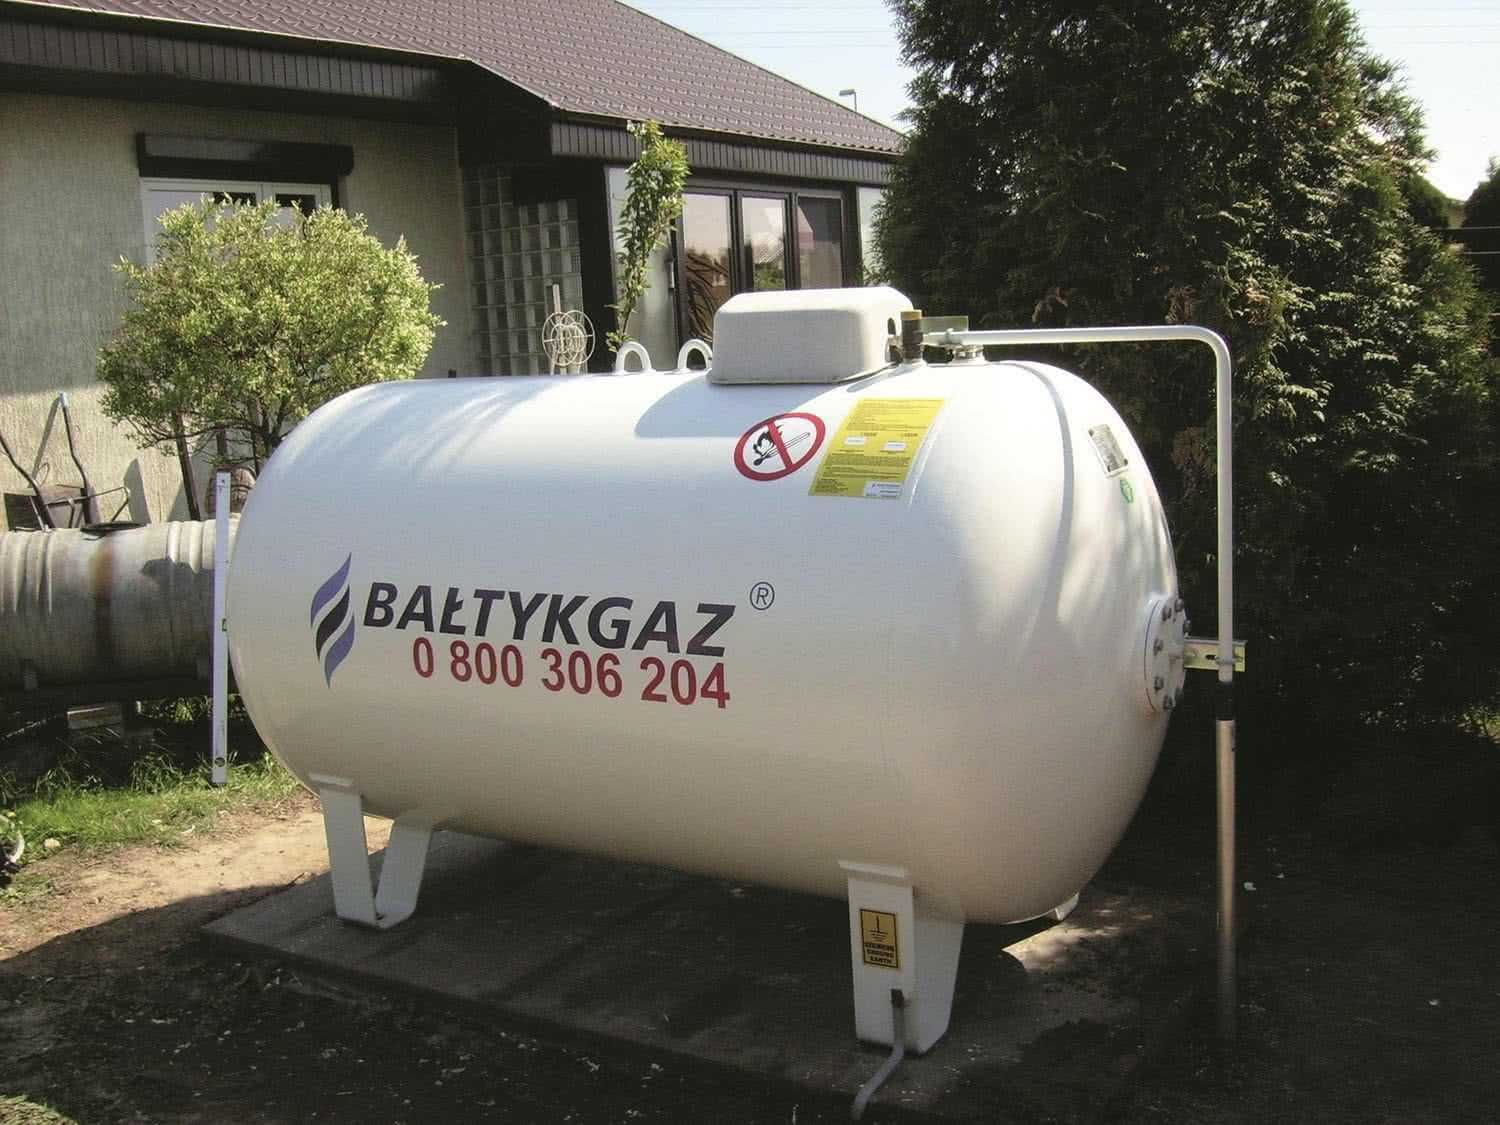 Zakup/Dzierżawa zbiornika na gaz 2700L lub większe - Propan BAŁTYKGAZ